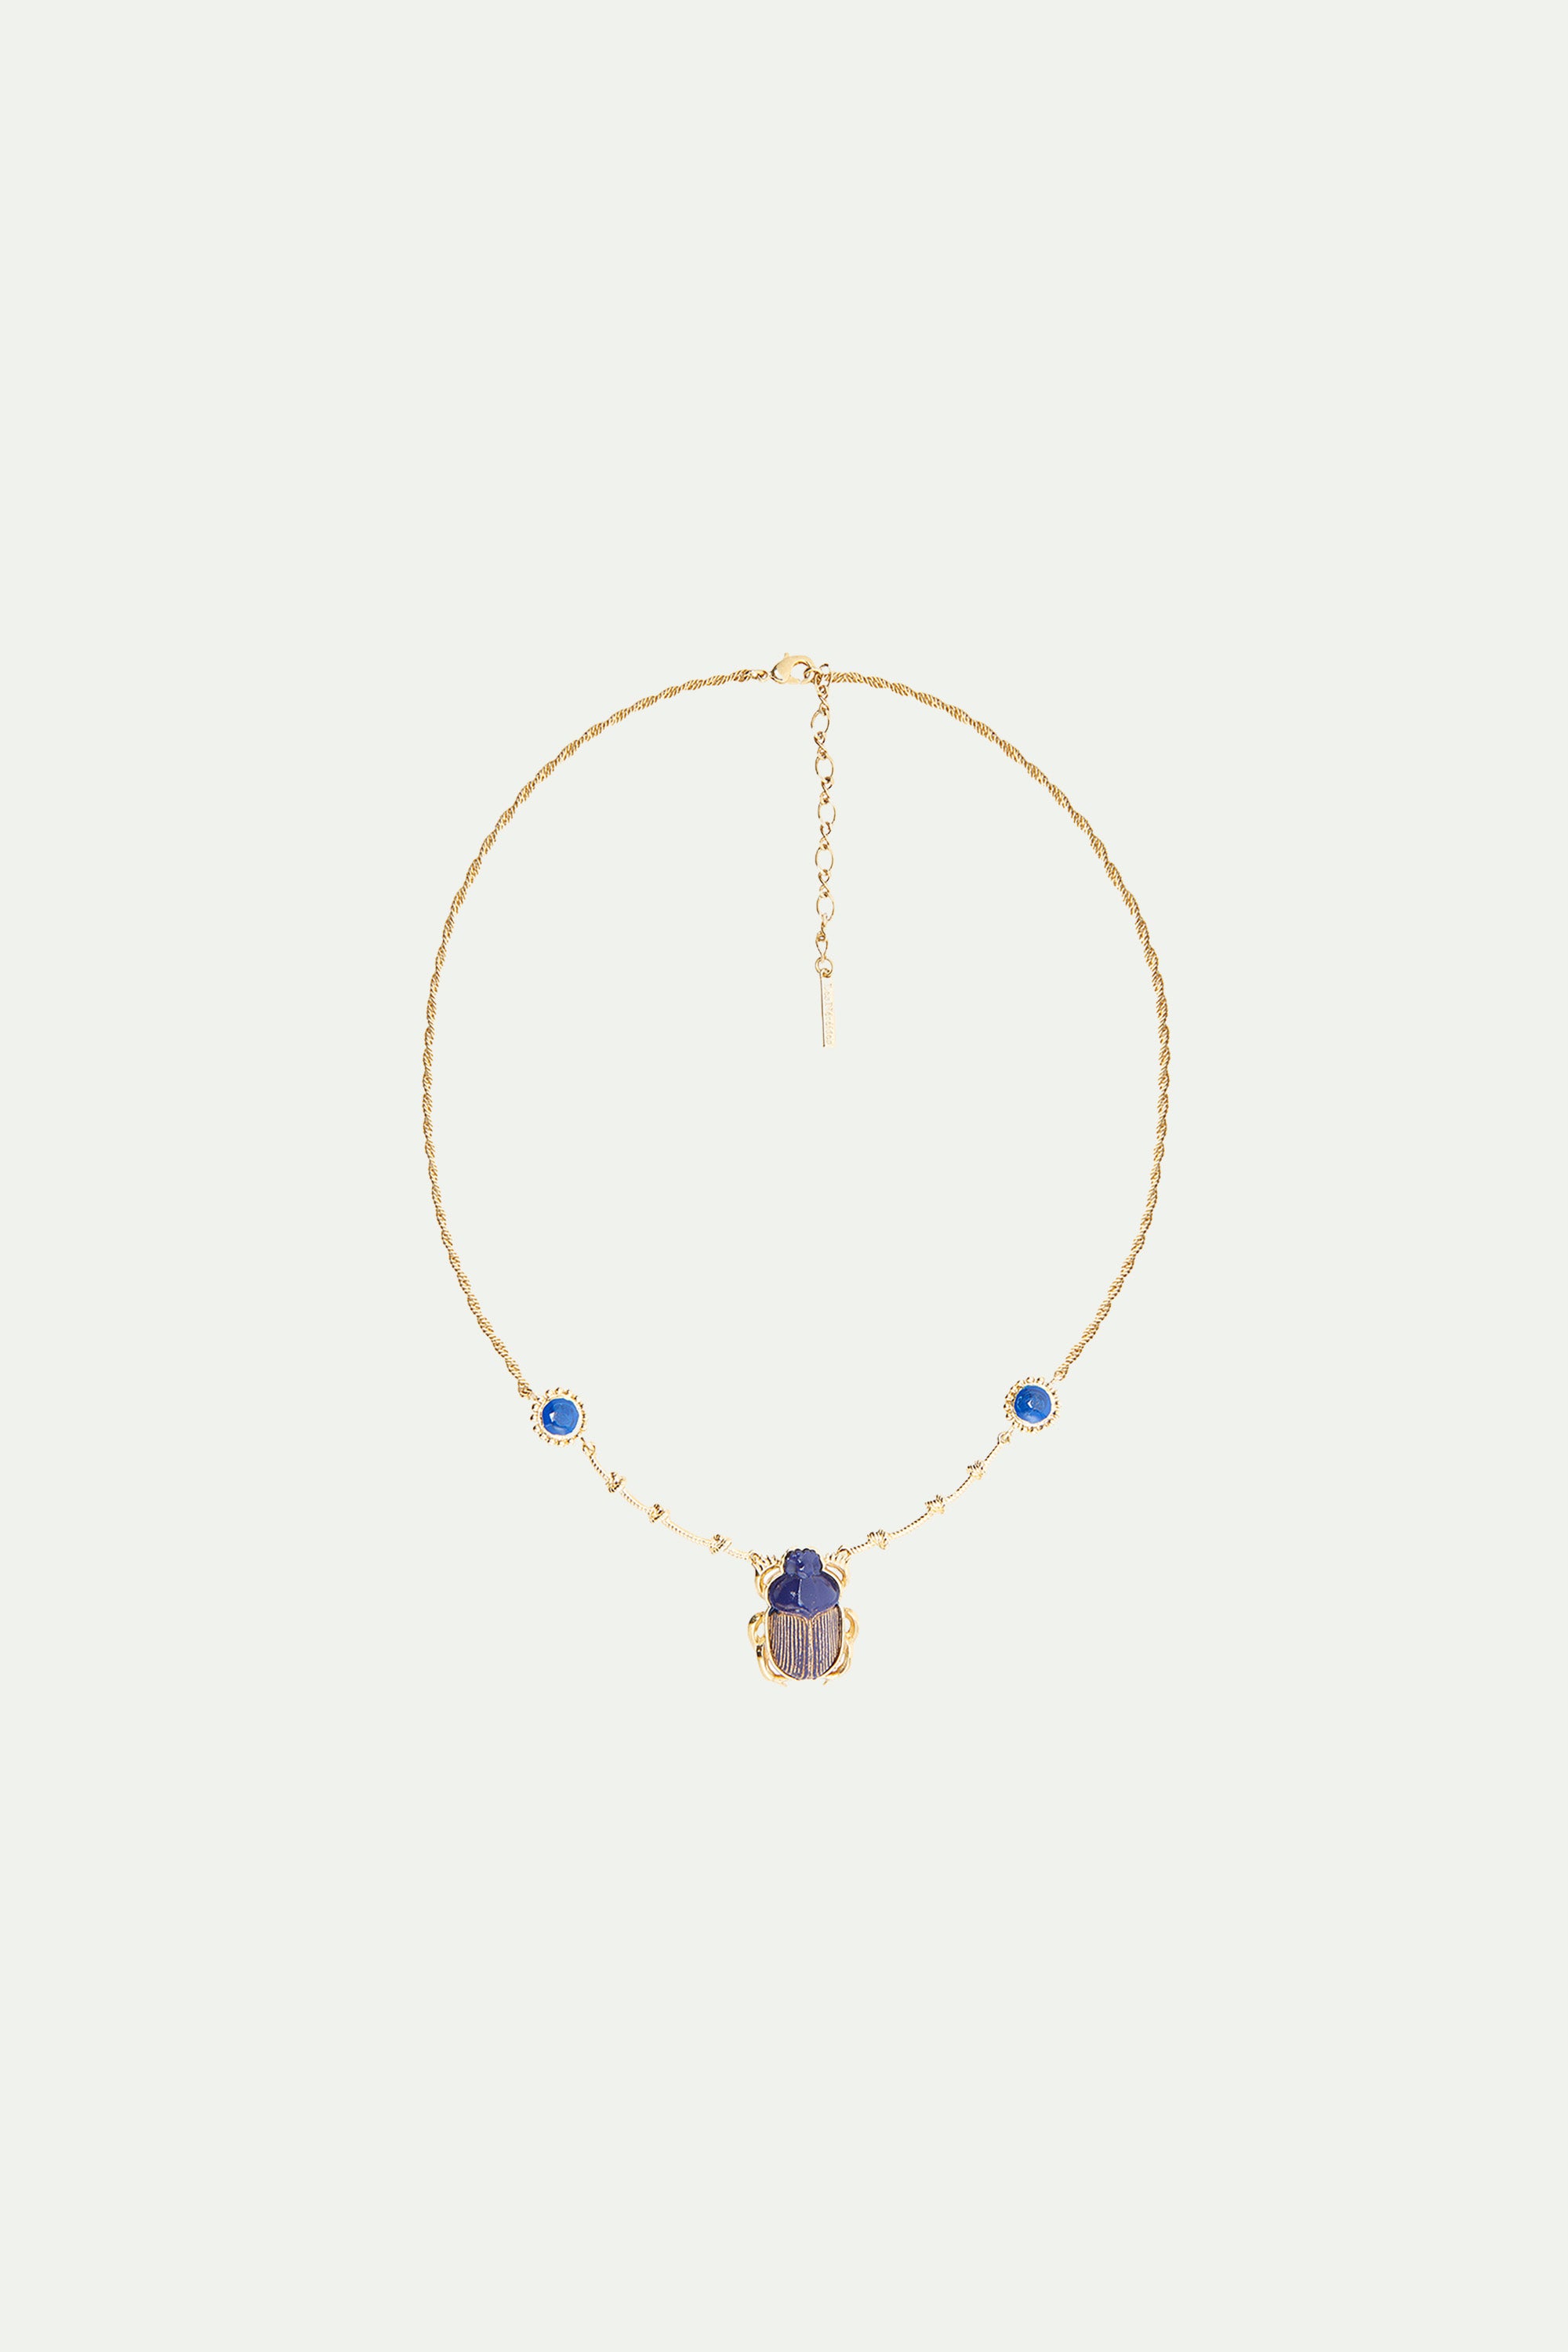 Collier pendentif scarabée bleu sacré d'Egypte